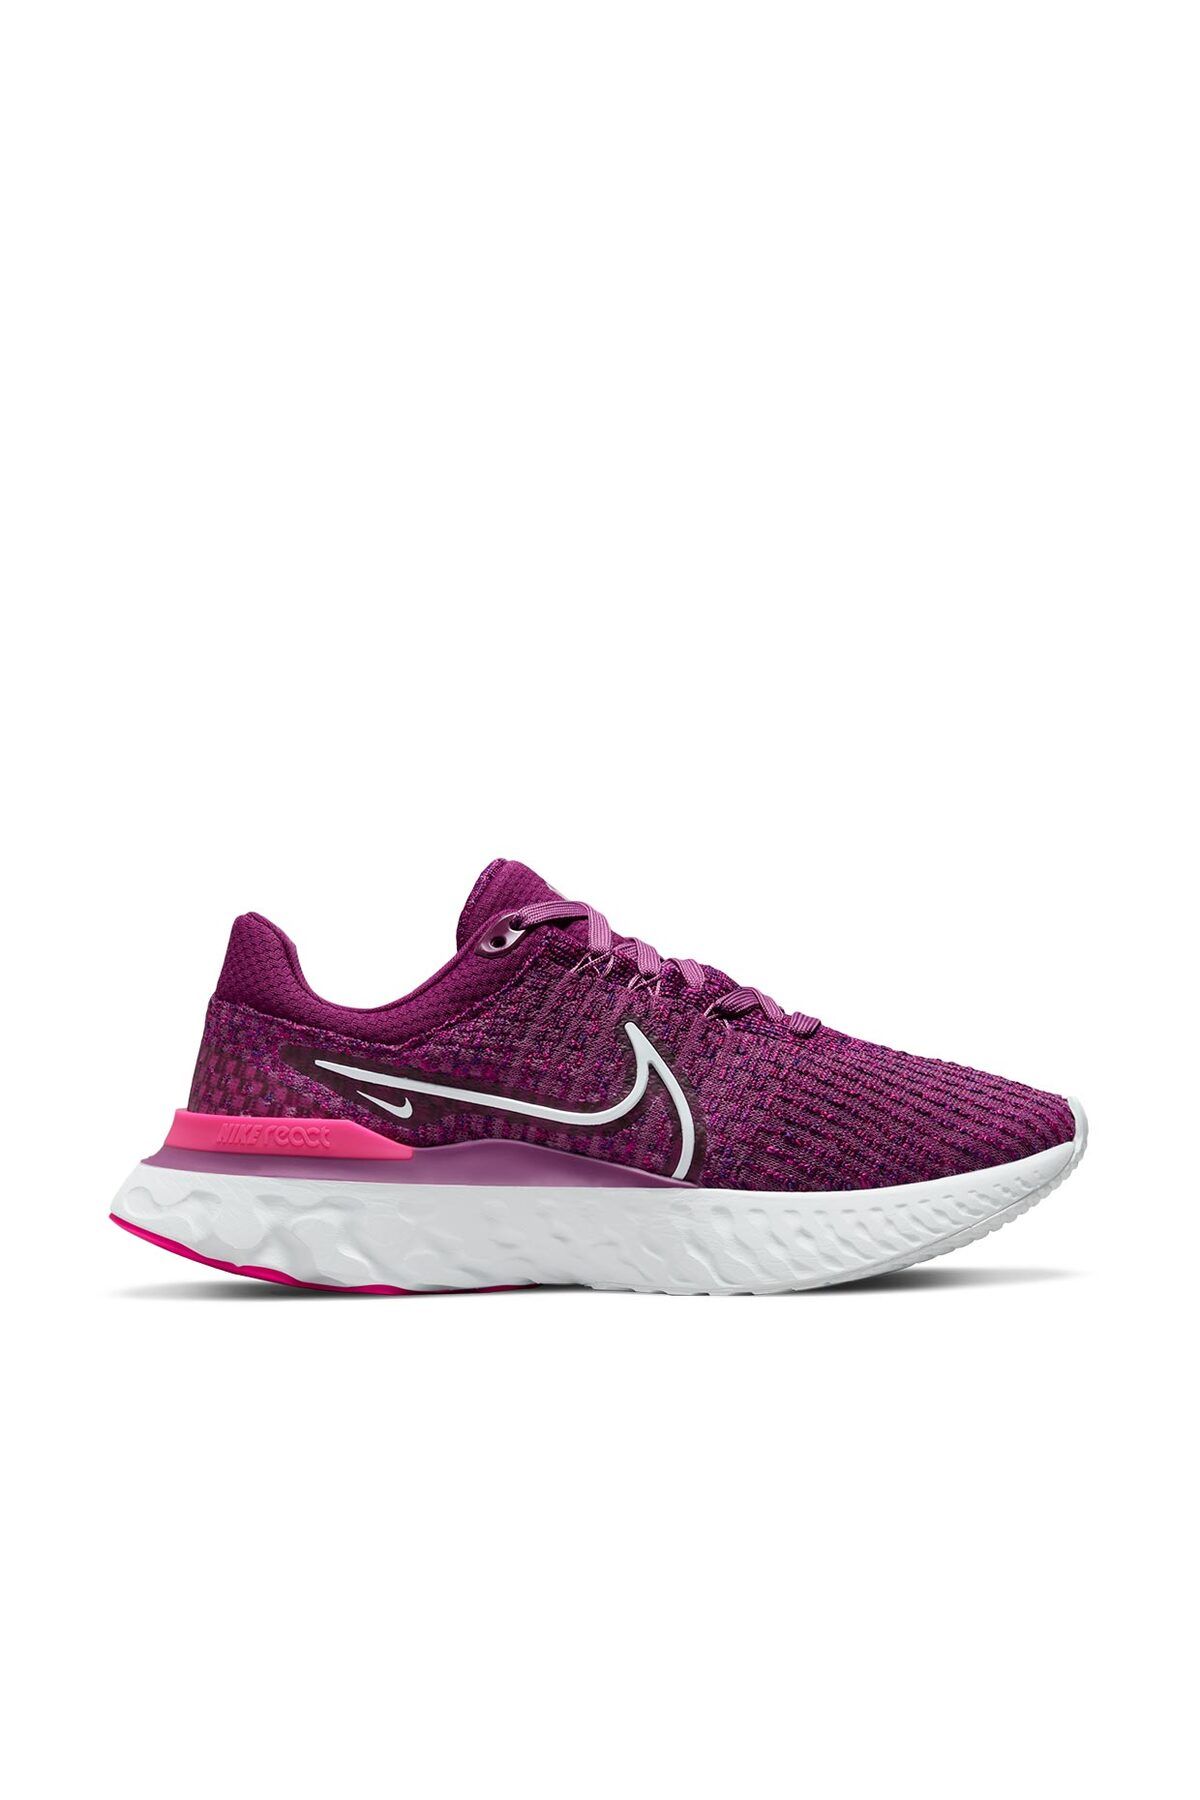 Nike React infinity Run Flyknit 3 Running Shoes Kadın Mor Yürüyüş Koşu Ayakkabısı